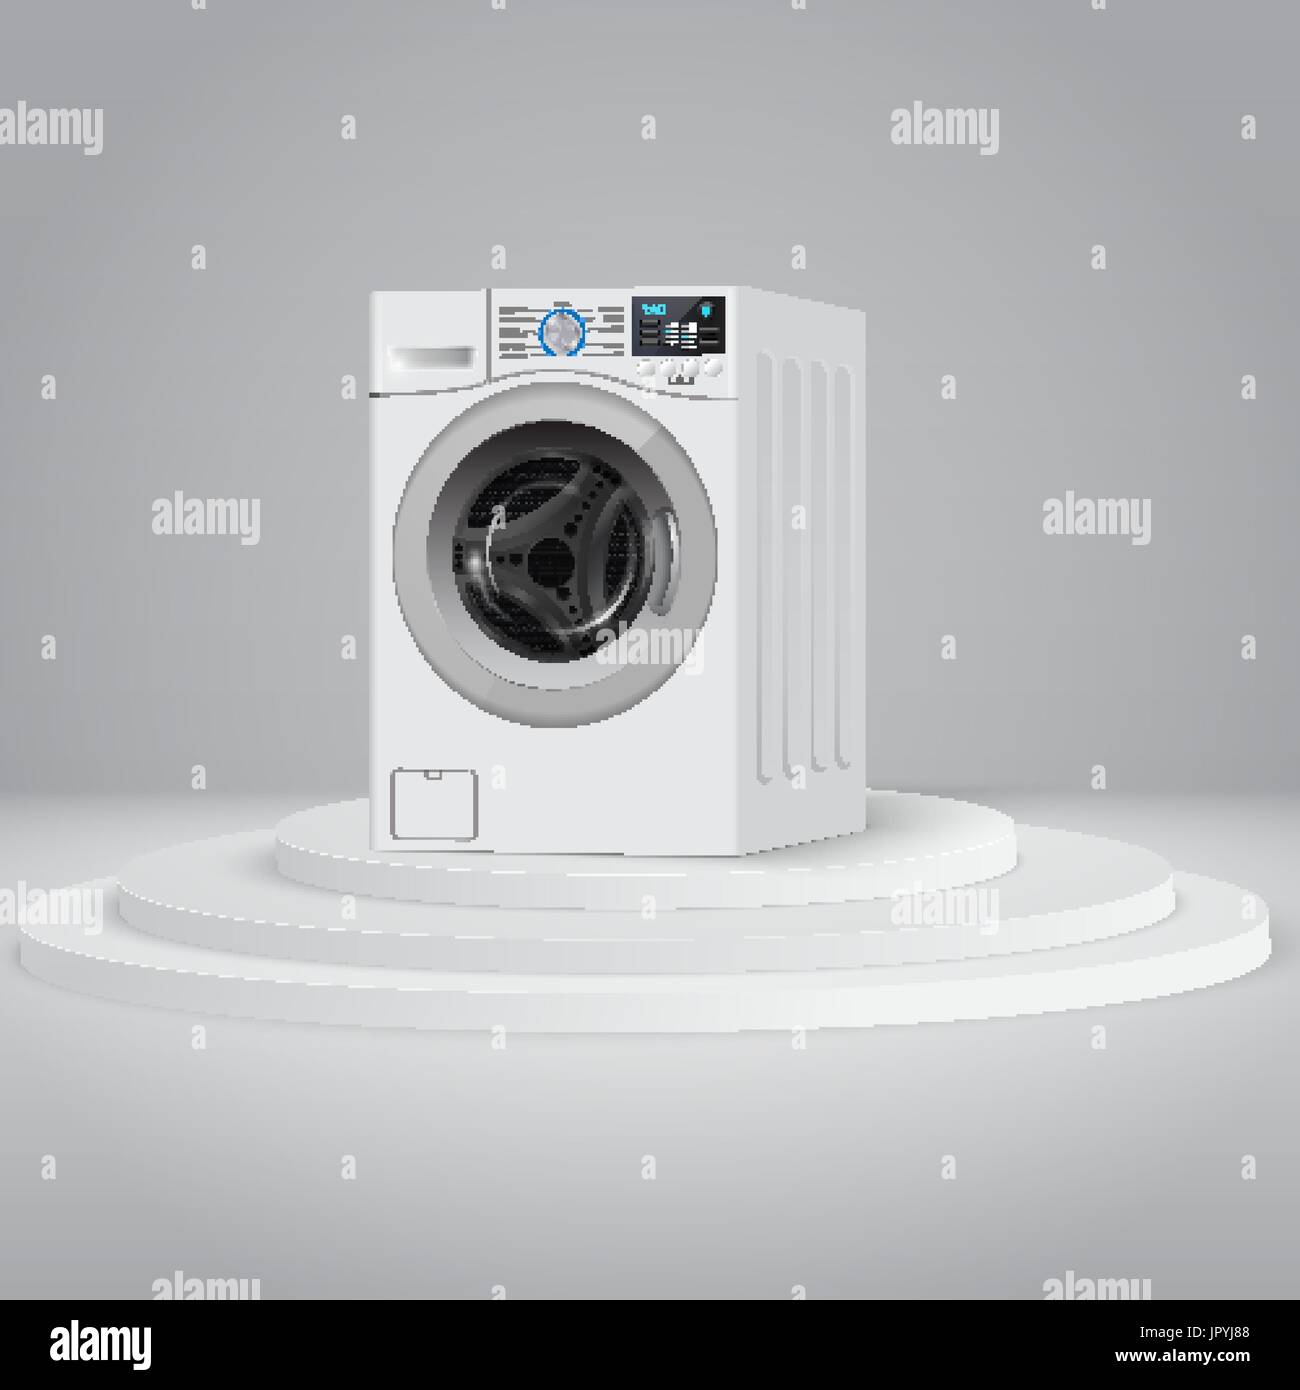 Realistische weiße Frontlader Waschmaschine auf Runde weiße Podium perspektivische Ansicht, close-up. 3D realistische Vektor Unterlegscheibe. Stock Vektor